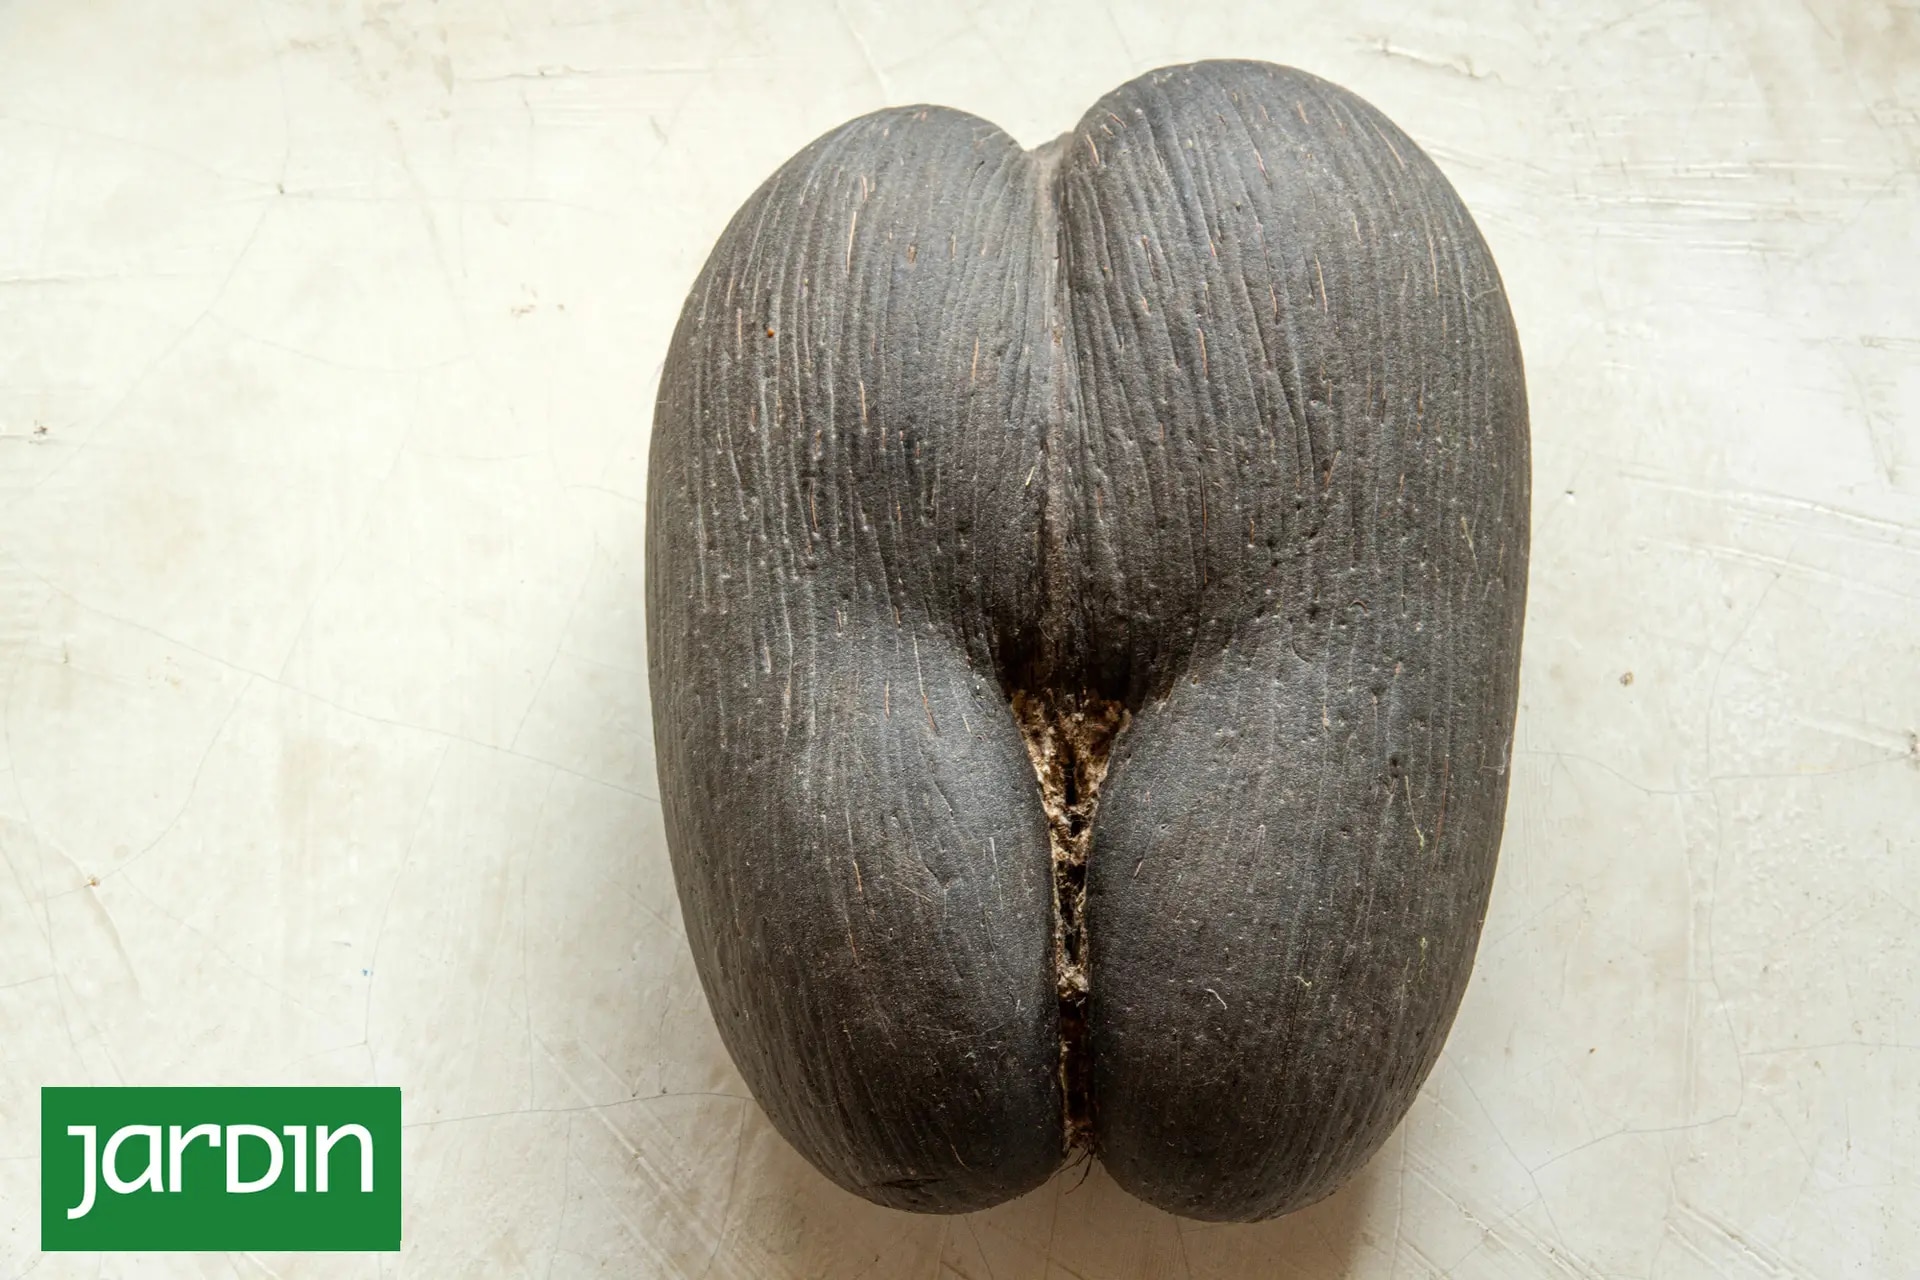 La semilla puede llegar a pesar 30 kilos y es la más grande del mundo